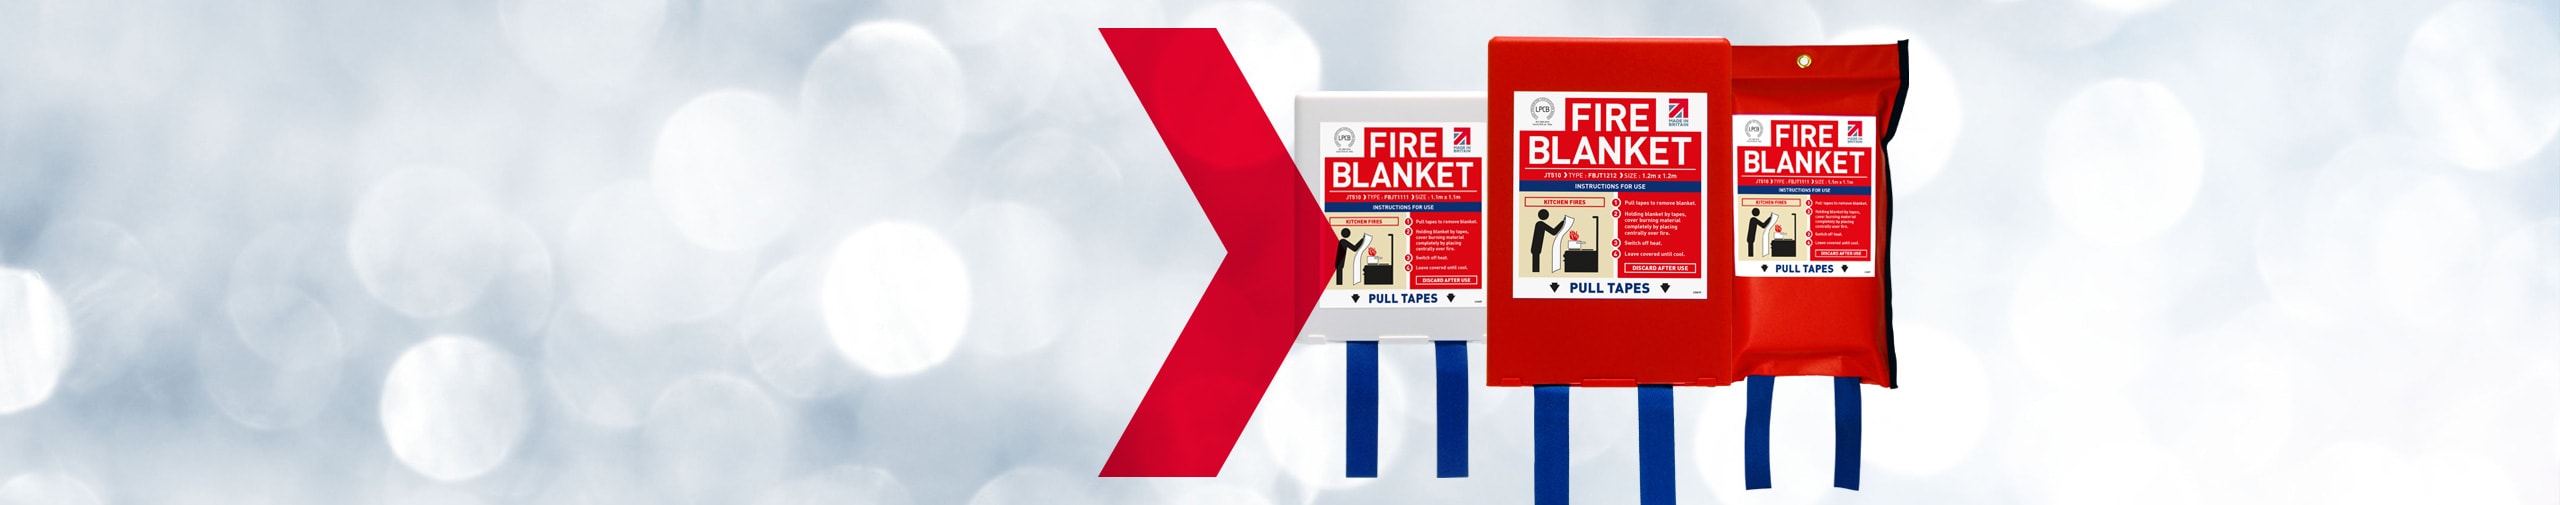 Jactone Fire Blankets certified to new standard EN 1869:2019